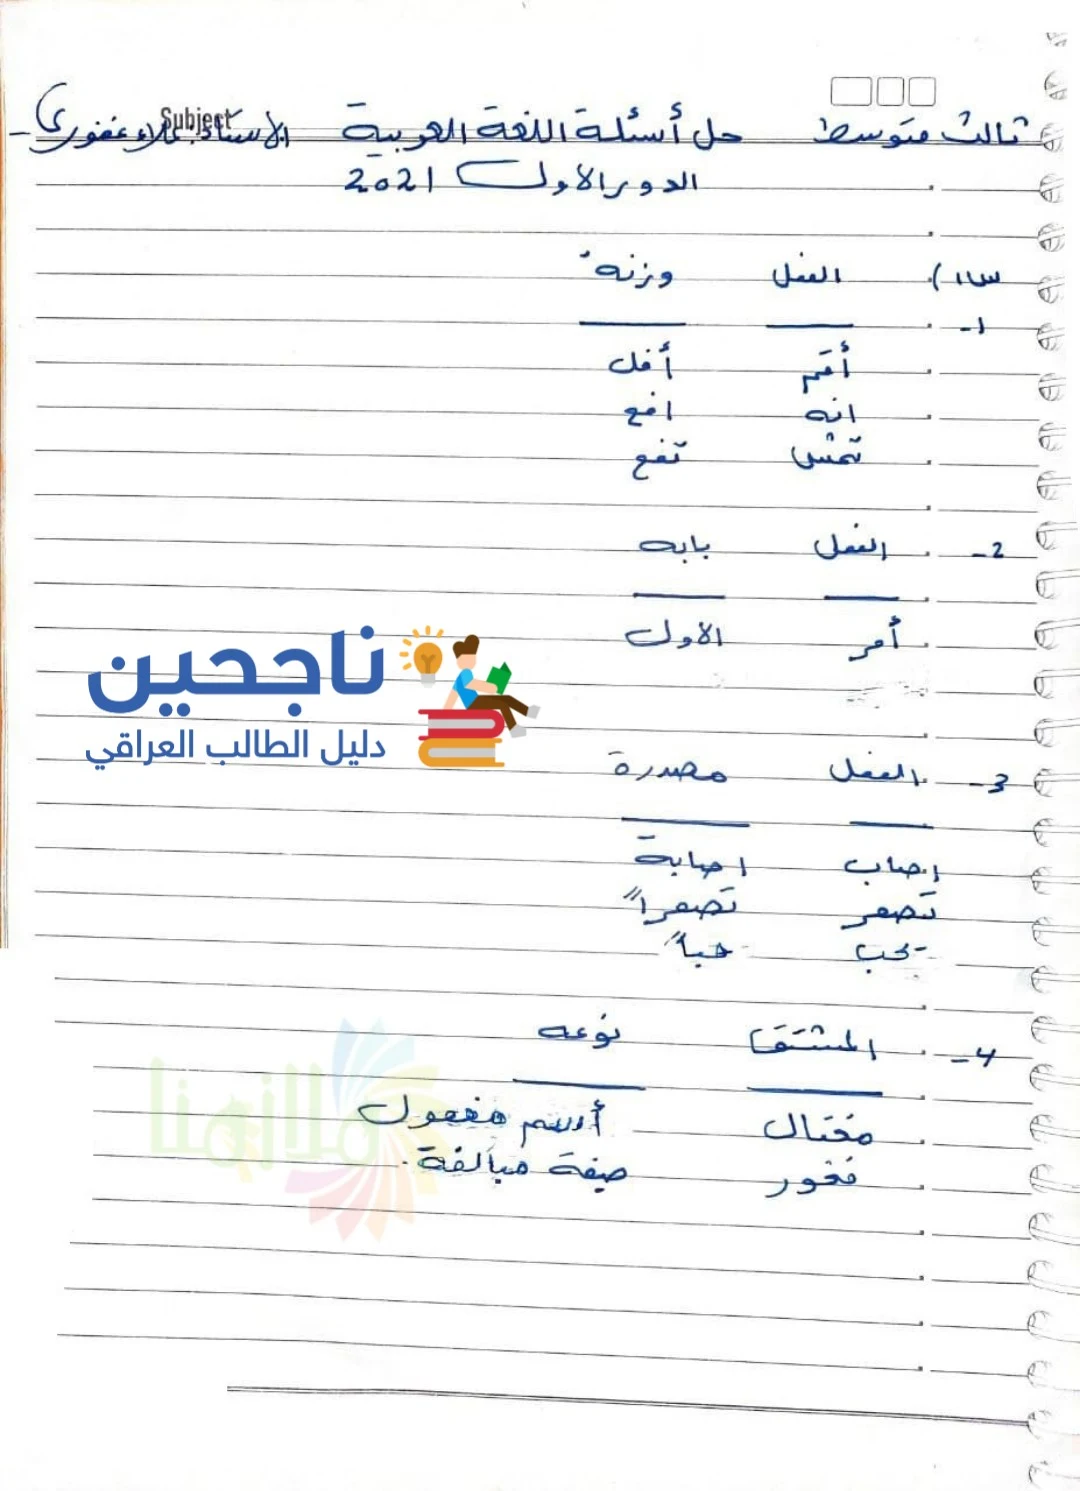 حل اسئلة اللغة العربية الصف الثالث متوسط 2021 الدور الاول